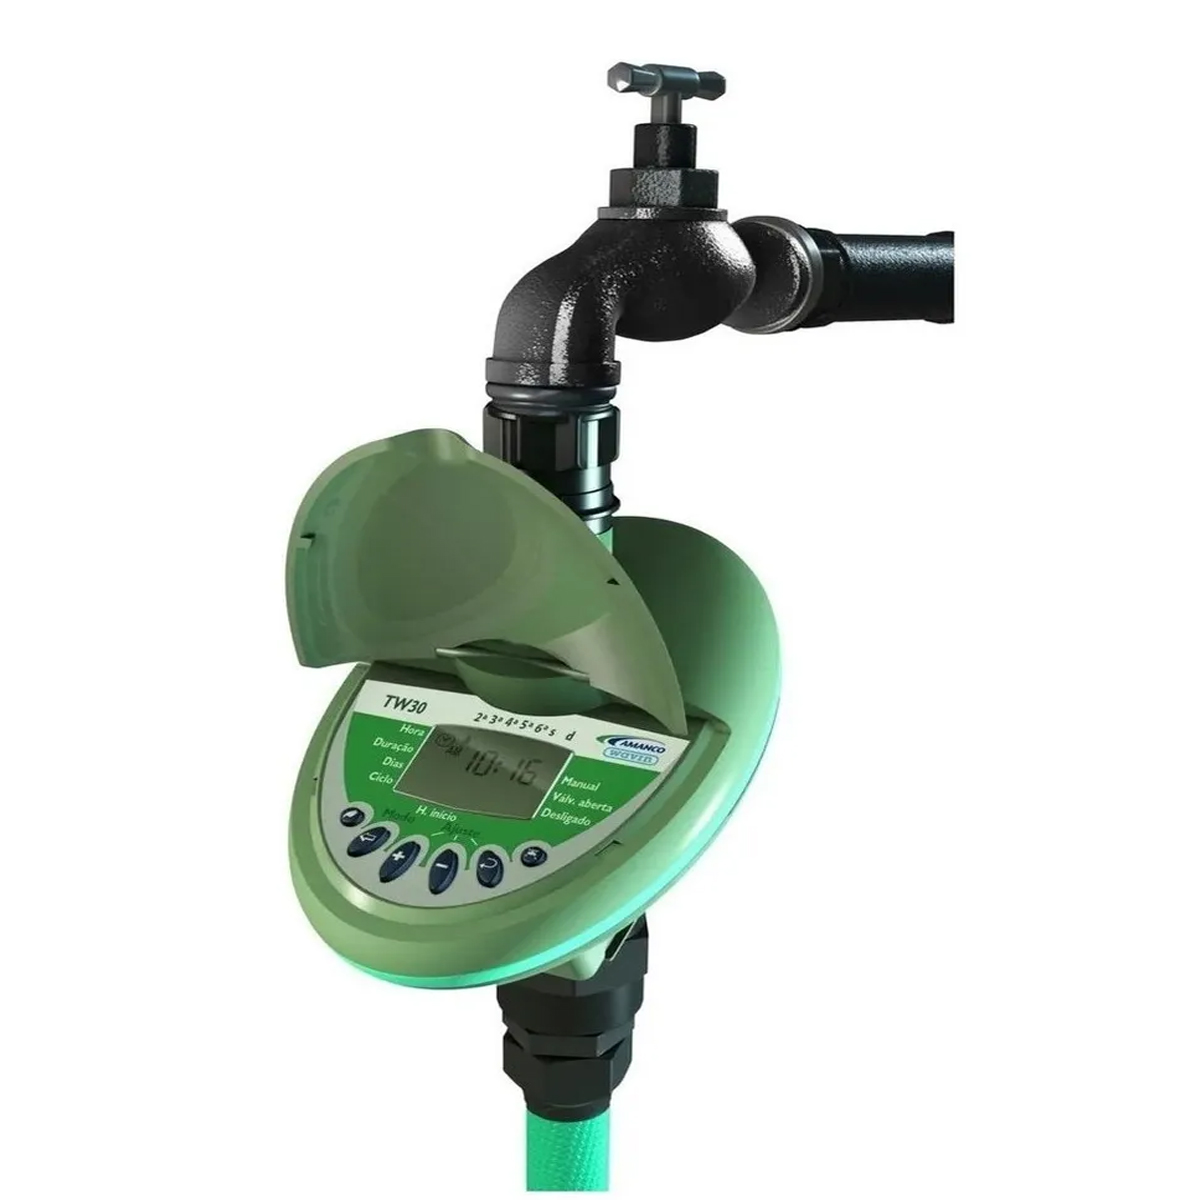 Temporizador Para Irrigação Digital TW30 Amanco